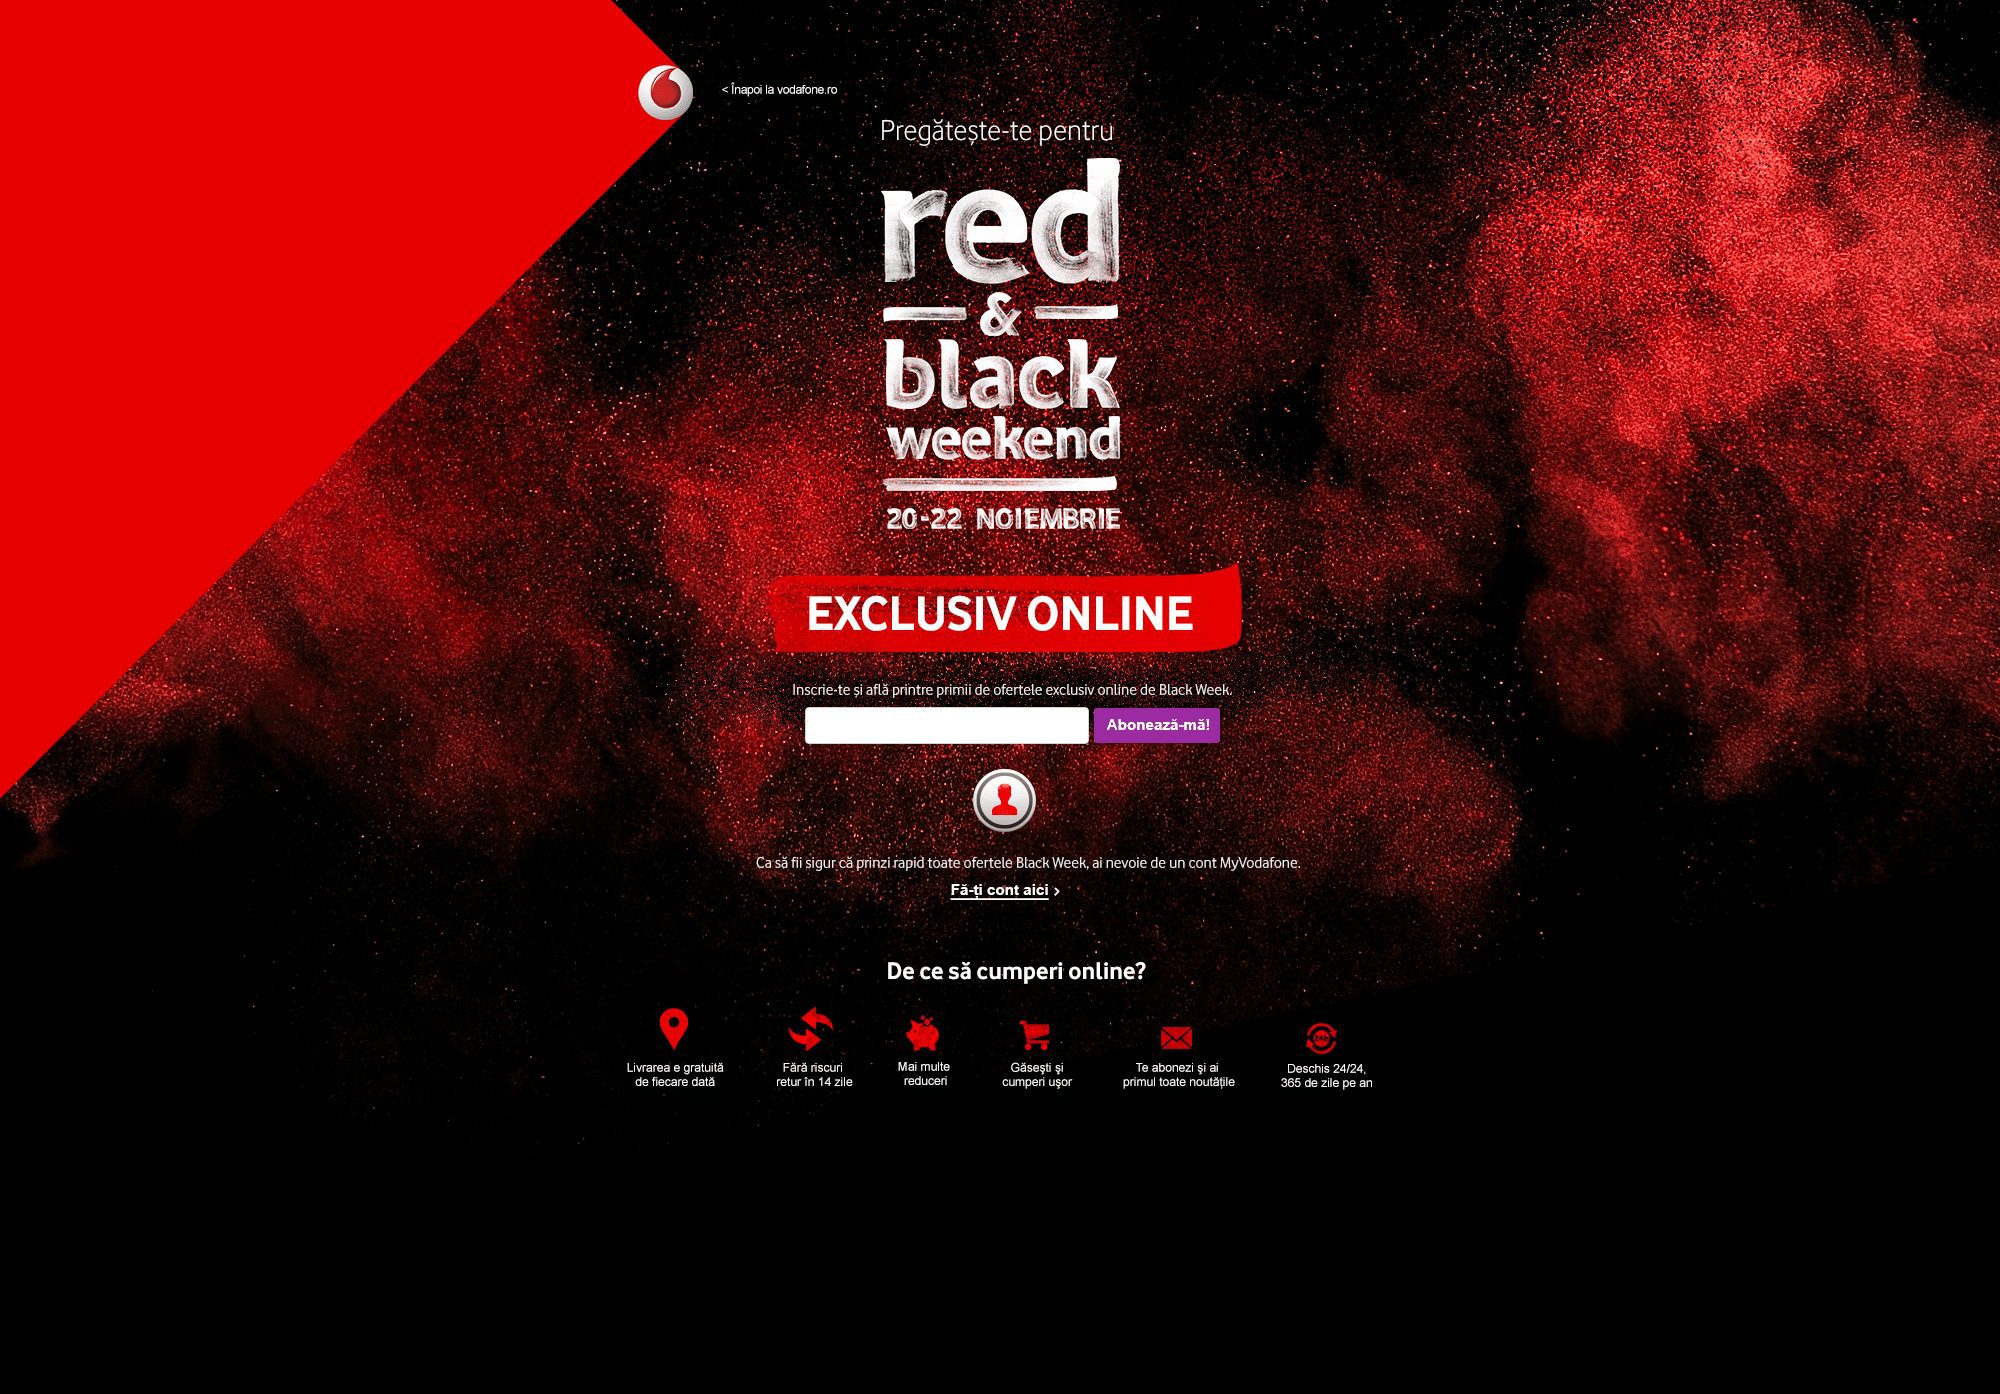 Vodafone anunță campania “Red & Black weekend” cu reduceri de până la 100% la telefoane și bonusuri de internet, pentru abonați